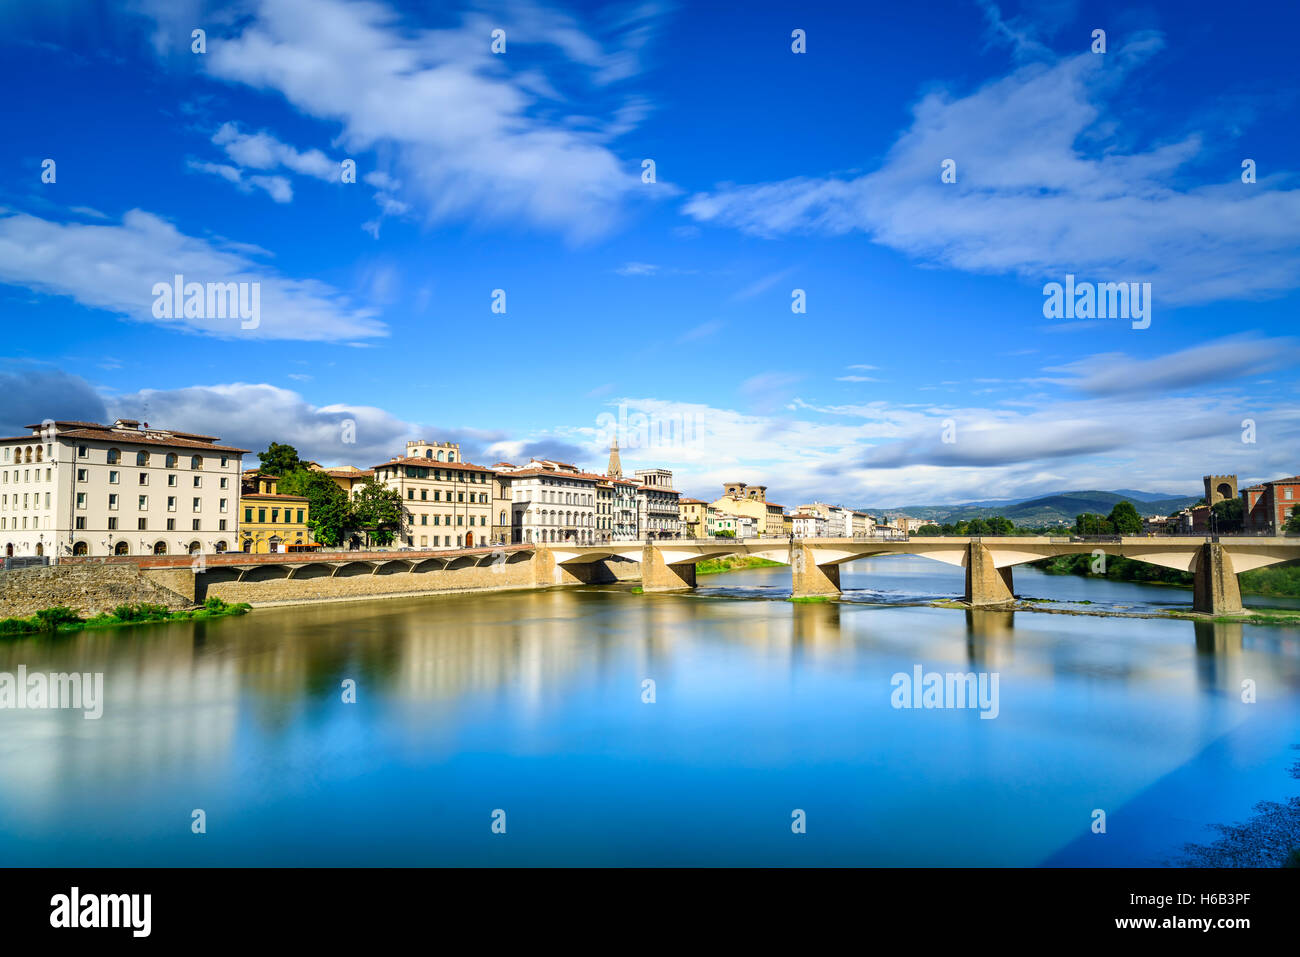 Firenze o Firenze, Ponte alle Grazie landmark ponte sul fiume Arno, tramonto paesaggio con la riflessione. Toscana, Italia. Lunga exp Foto Stock